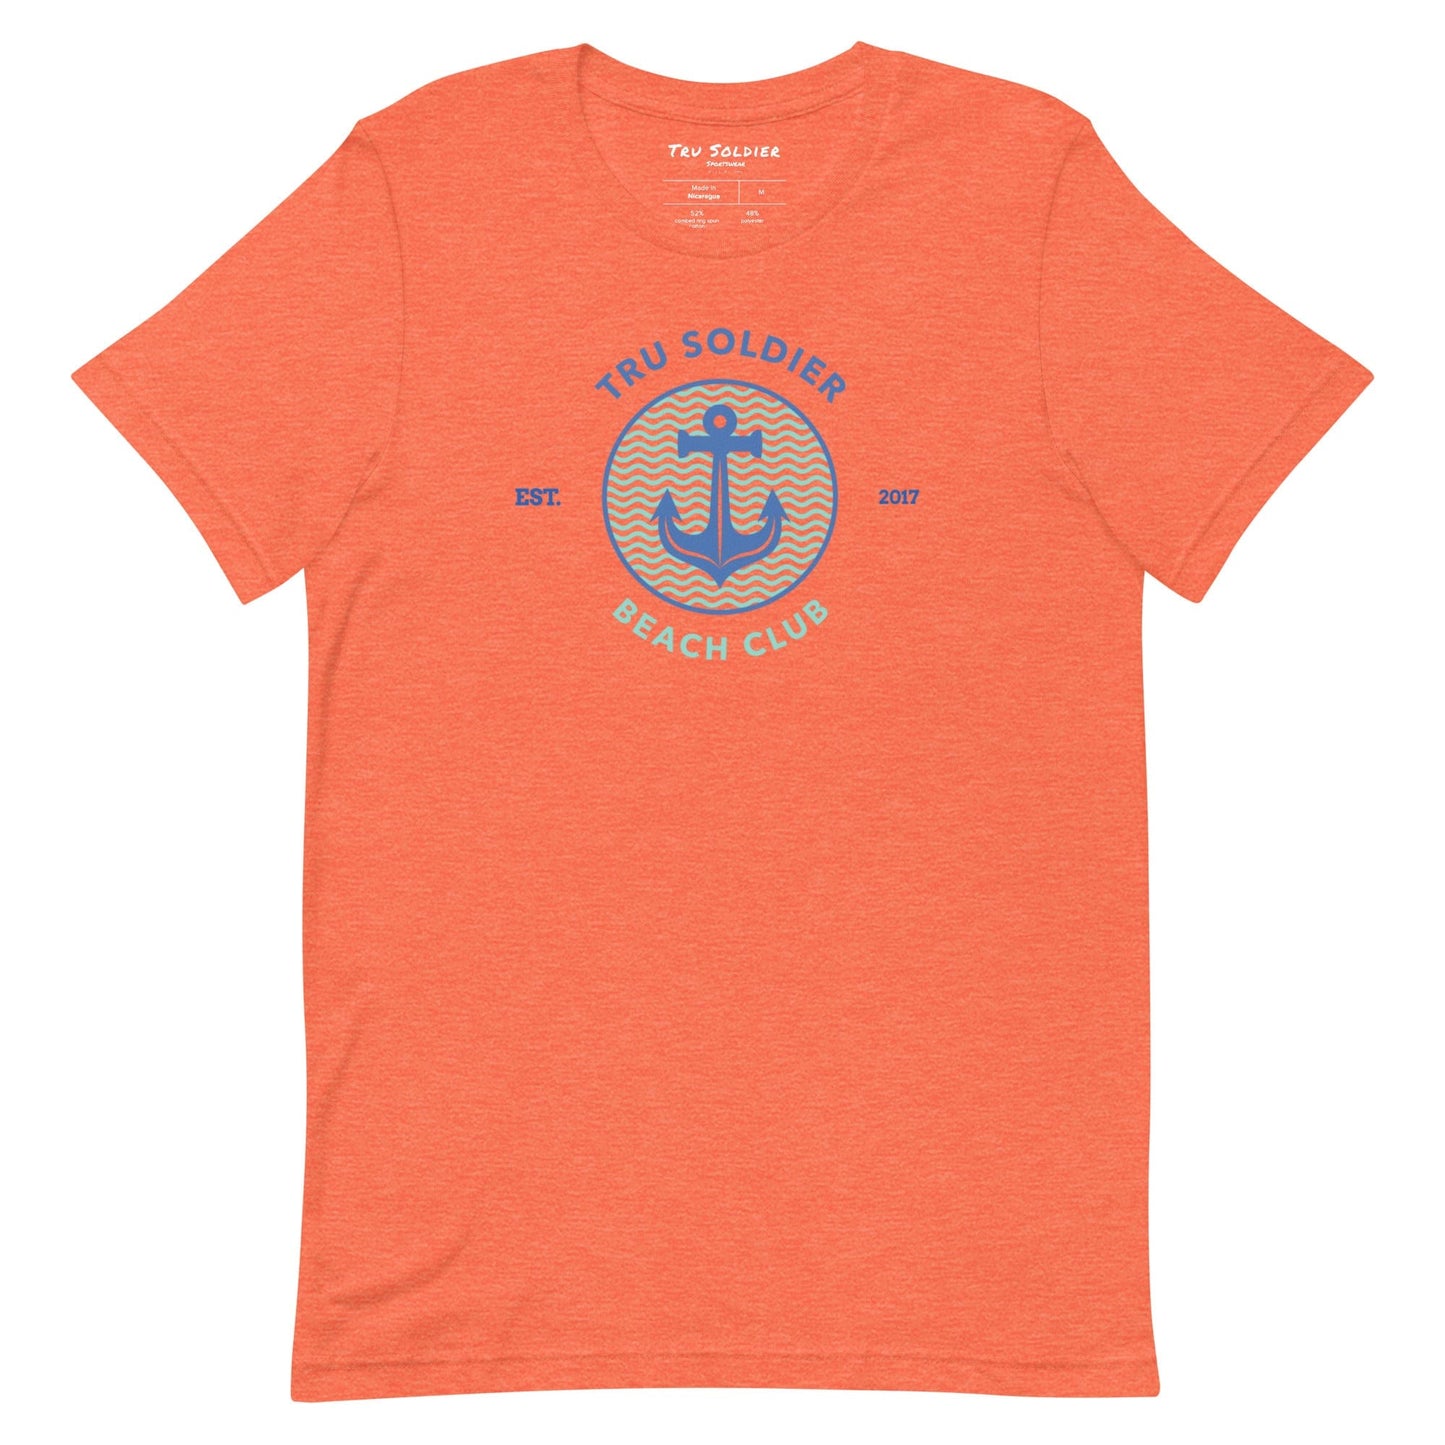 Tru Soldier Sportswear  Heather Orange / S Tru Soldier Beach Club t-shirt